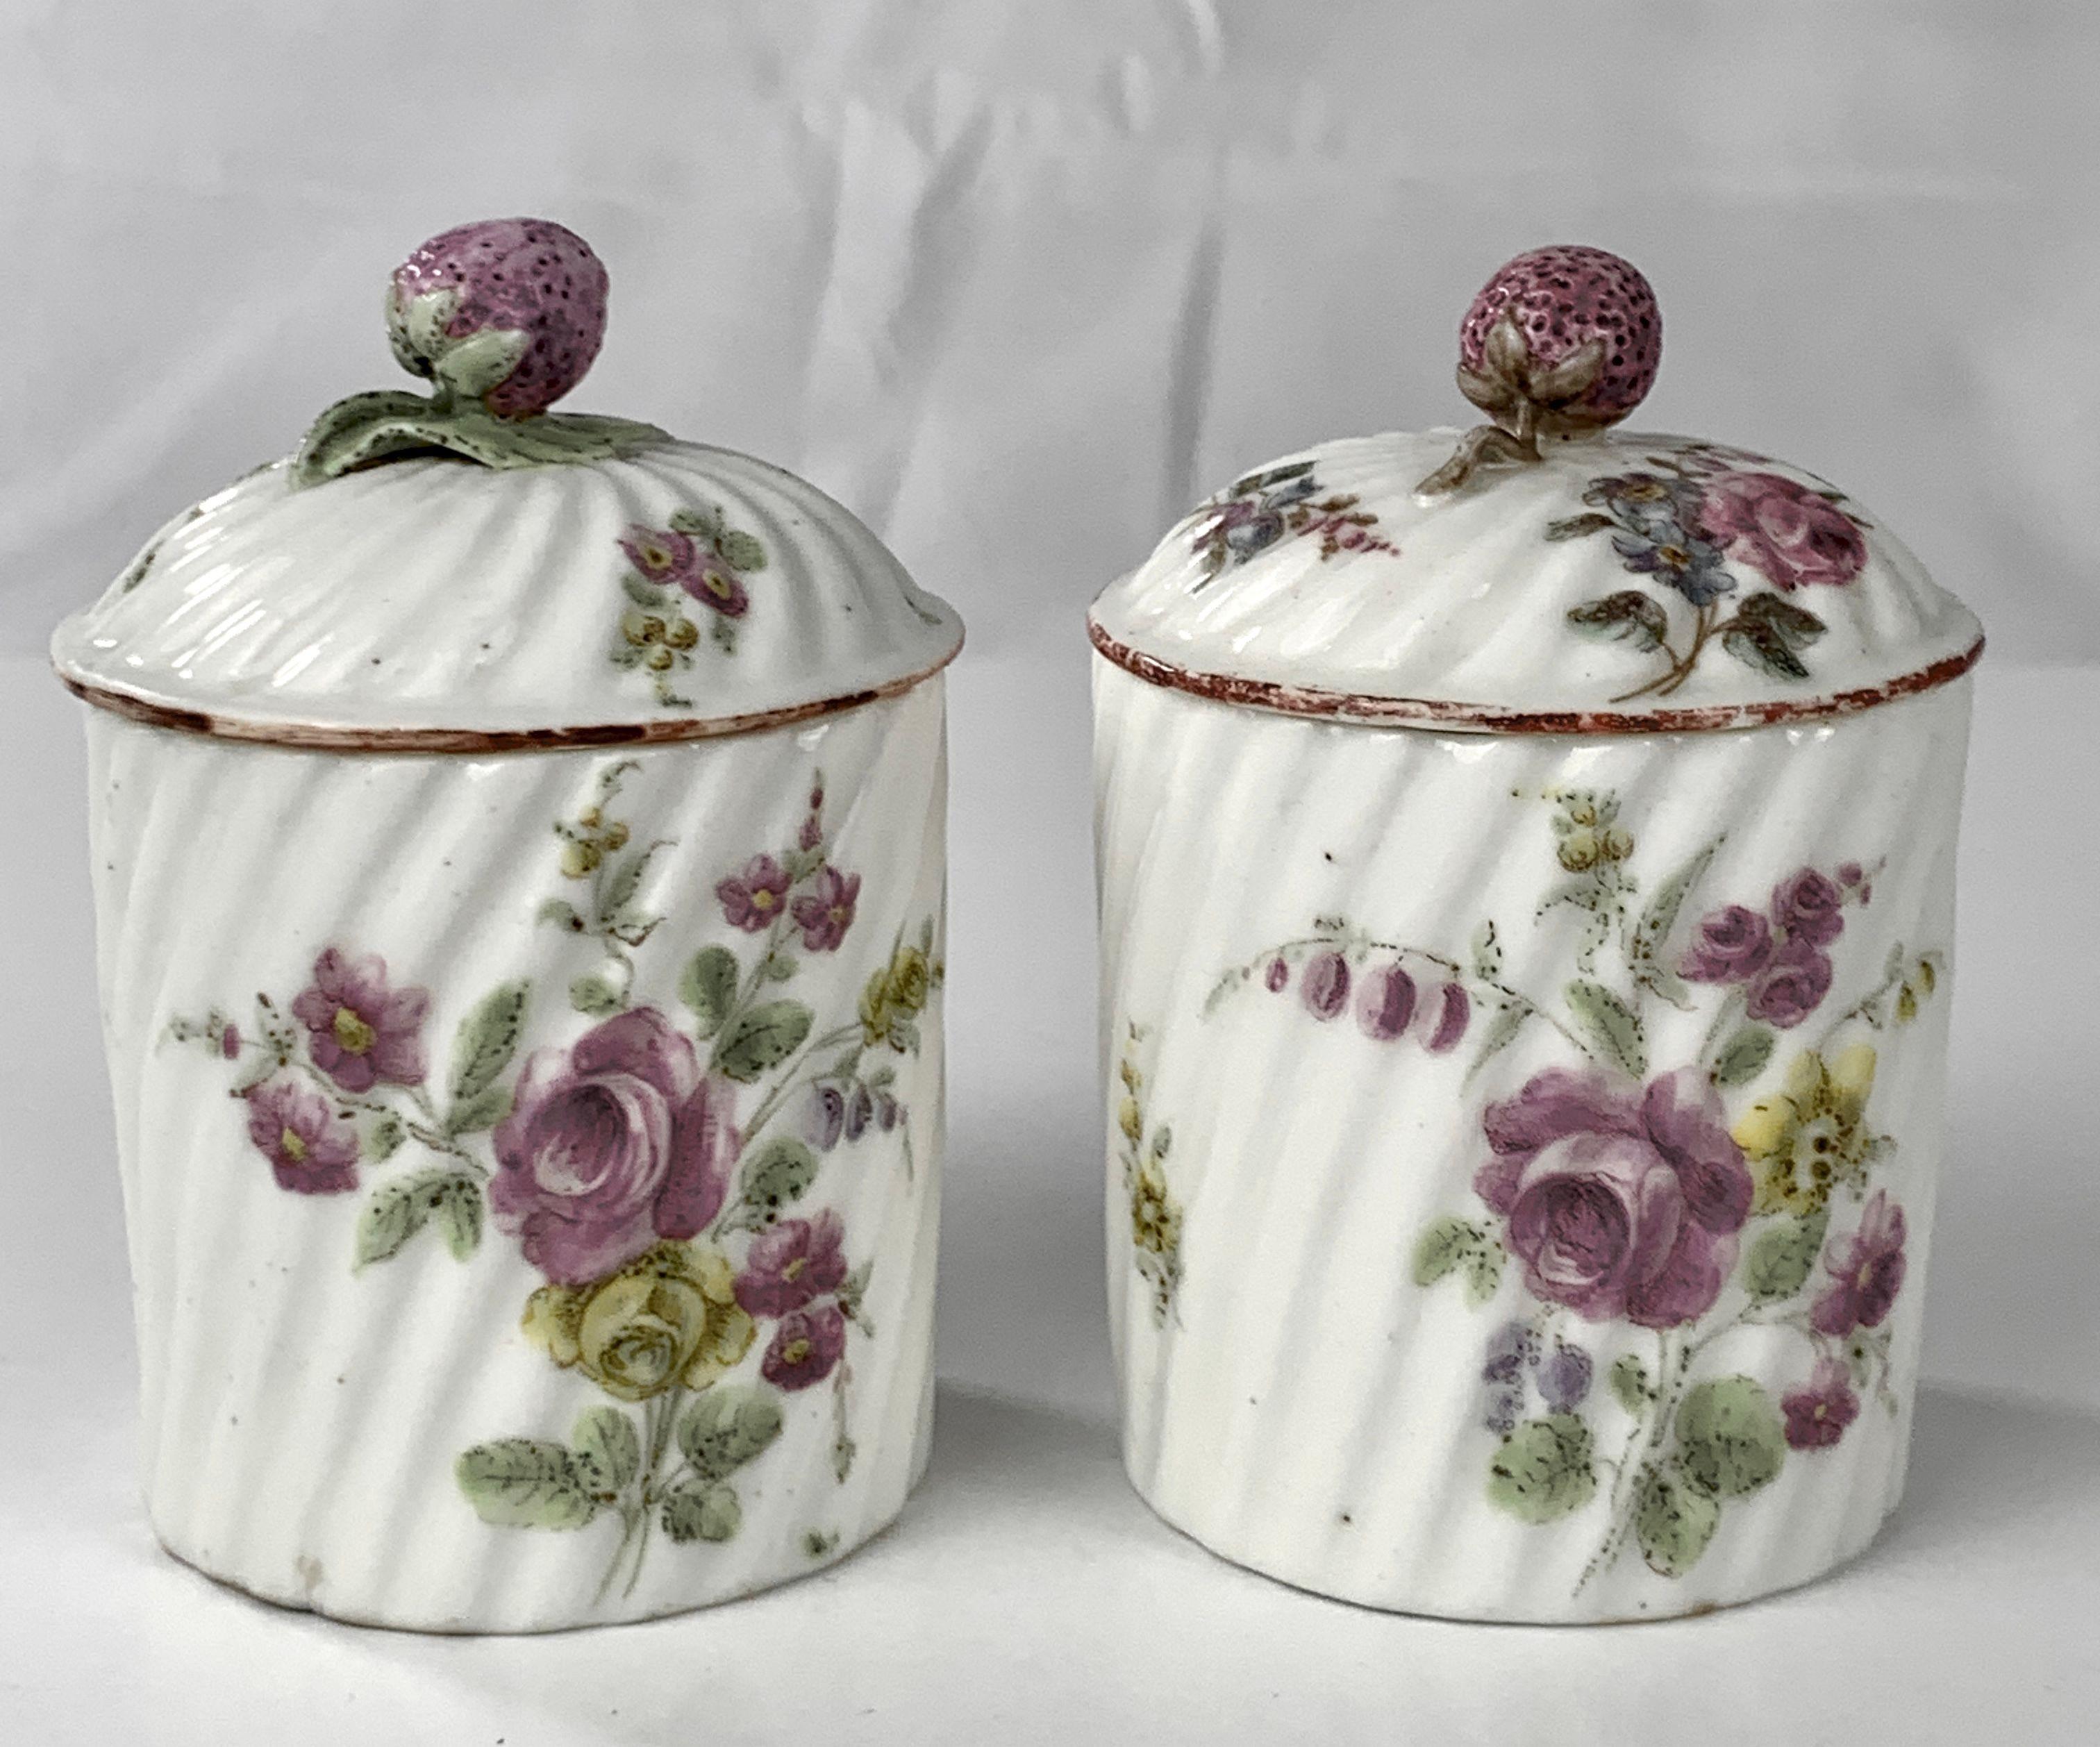 Provenance : Un domaine de la Nouvelle-Angleterre
Peints à la main au XVIIIe siècle, vers 1765, ces magnifiques pots à pommade en porcelaine de Mennecy à pâte molle sont rares. Des pots comme celui-ci contenaient de riches crèmes et lotions pour le